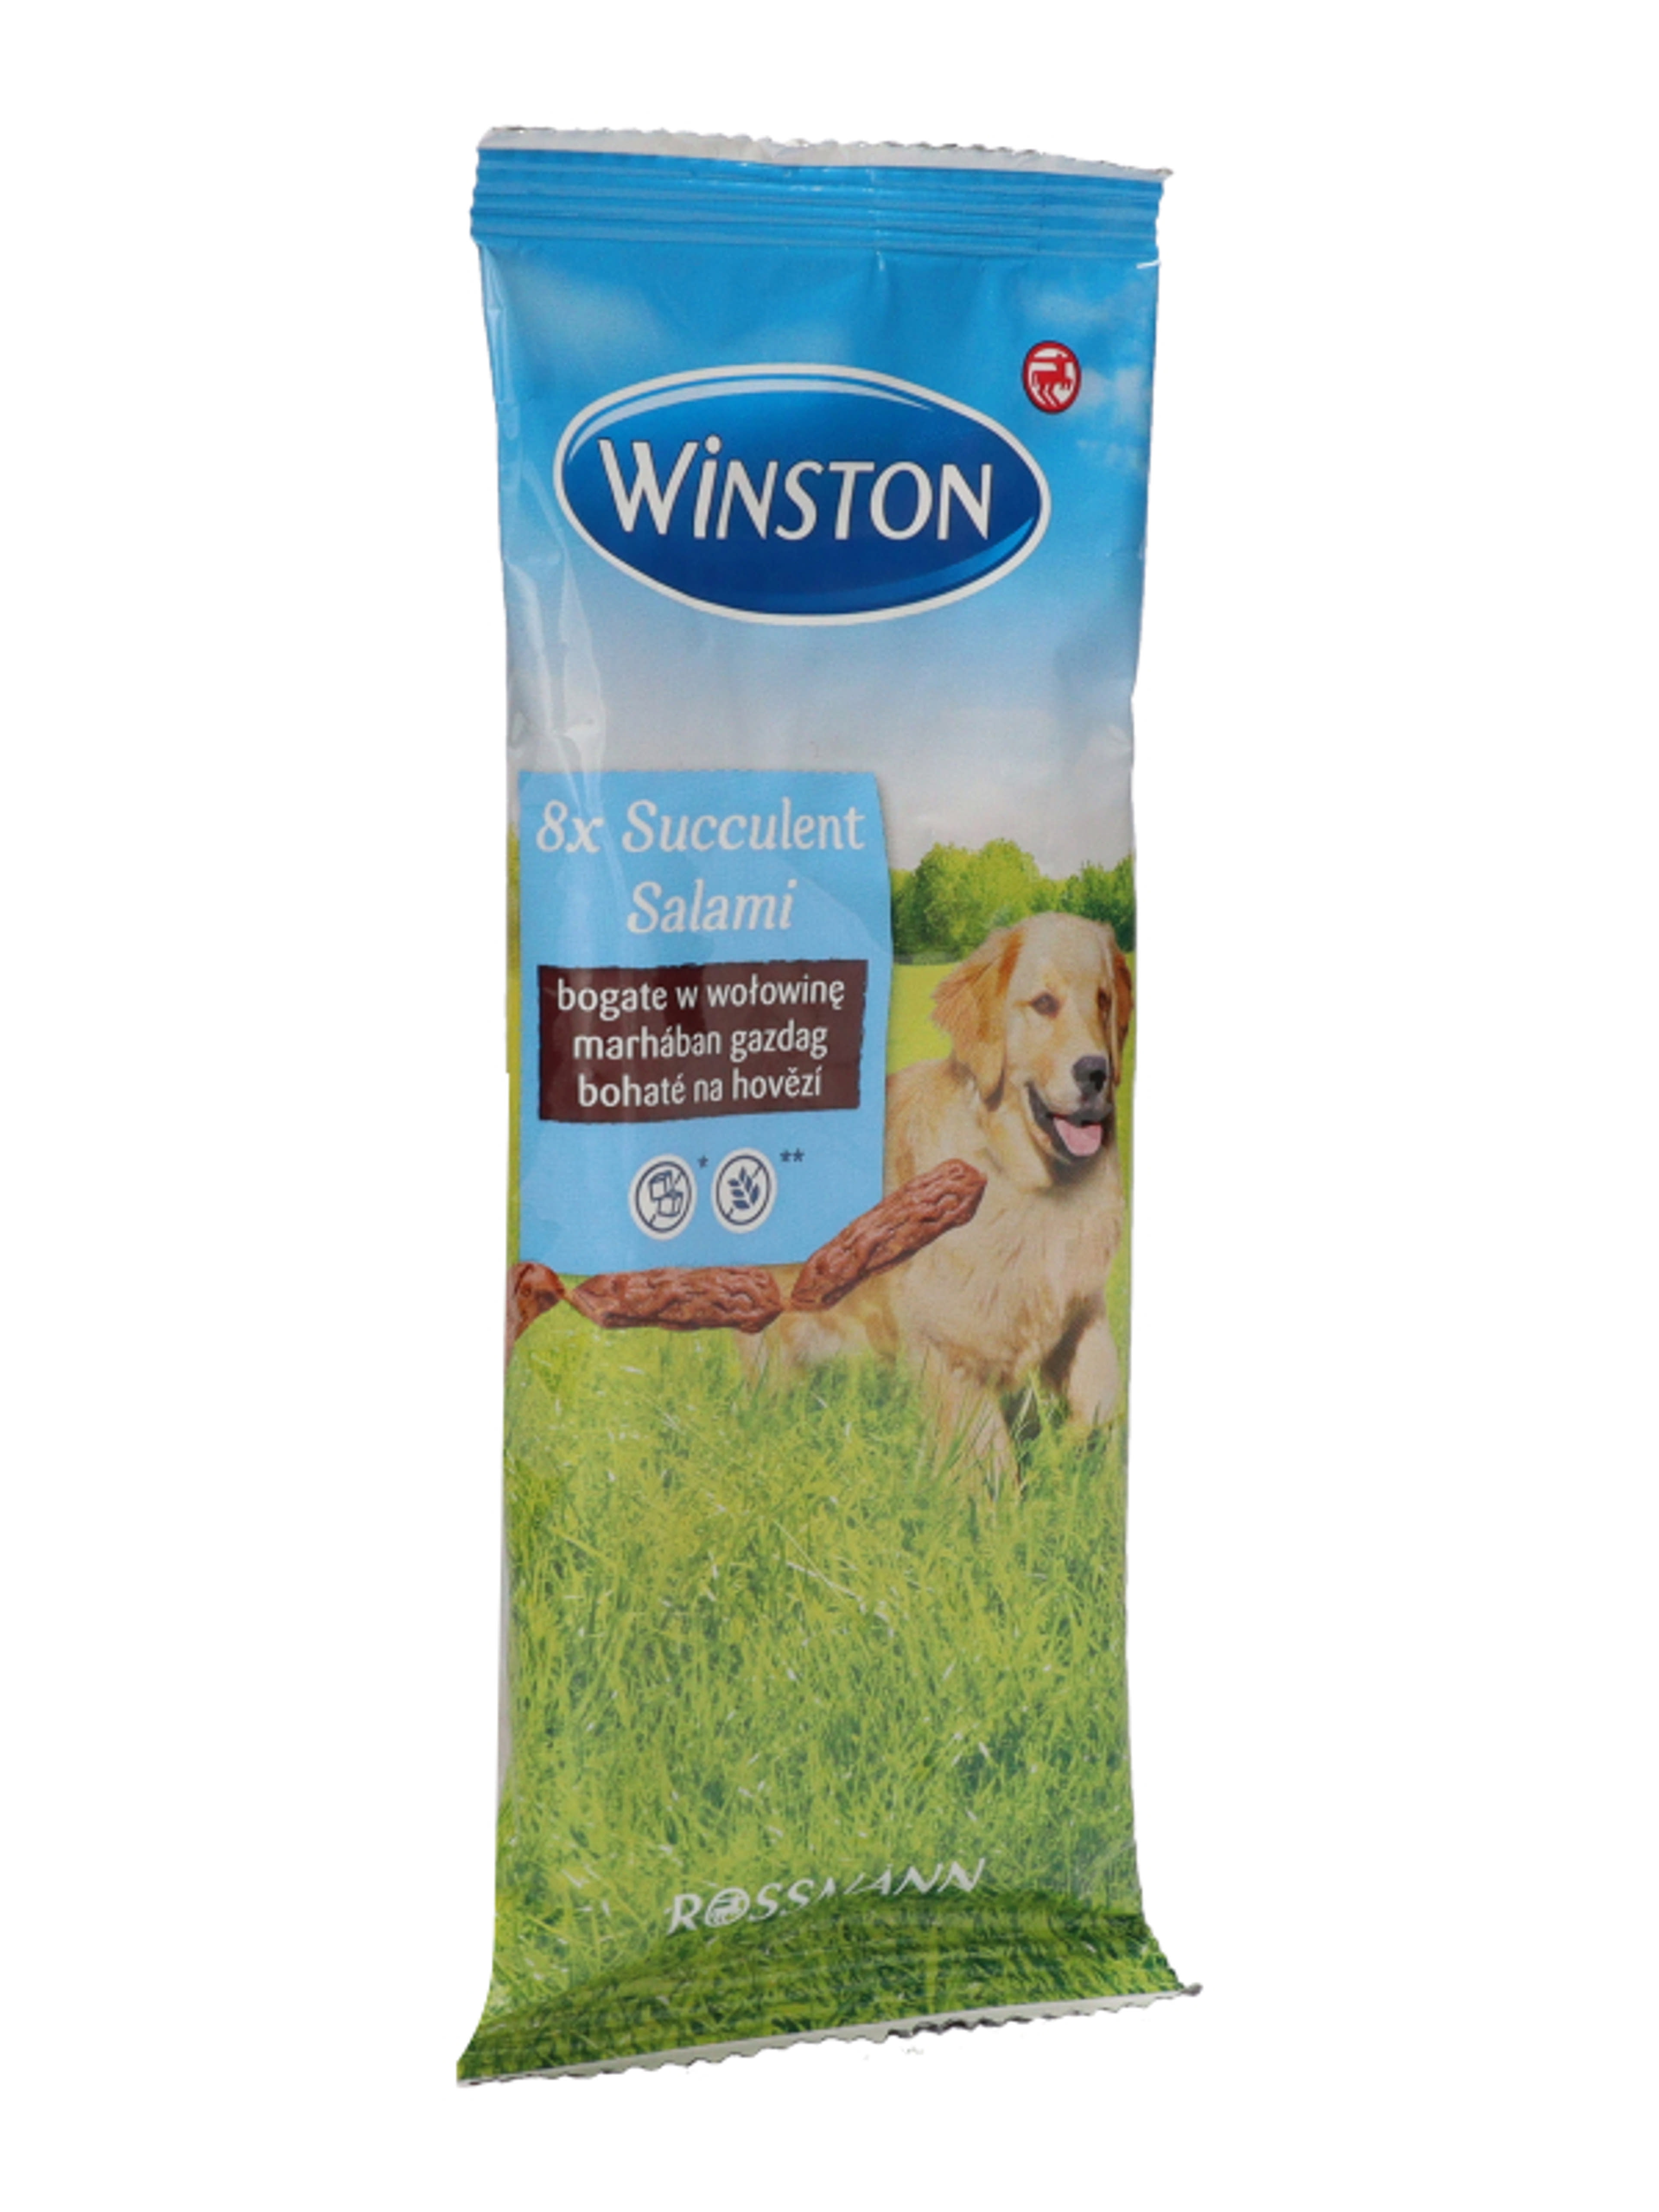 Winston jutalomfalat kutyáknak, szaftos szalálmi - 60 g - 8db-4